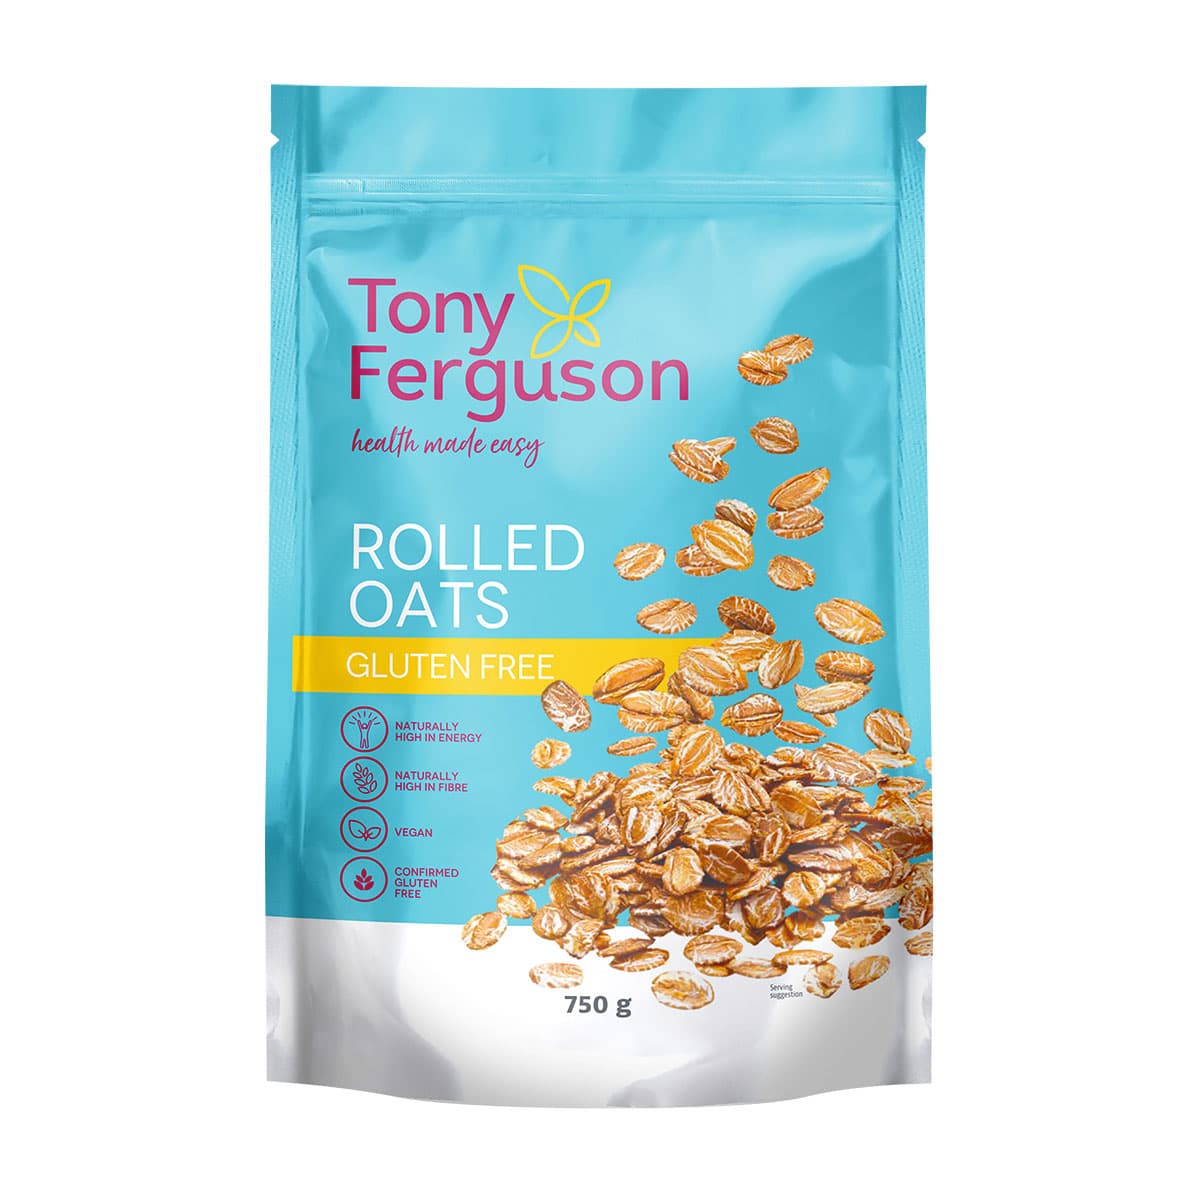 Tony Ferguson Rolled Oats Gluten Free - 750g